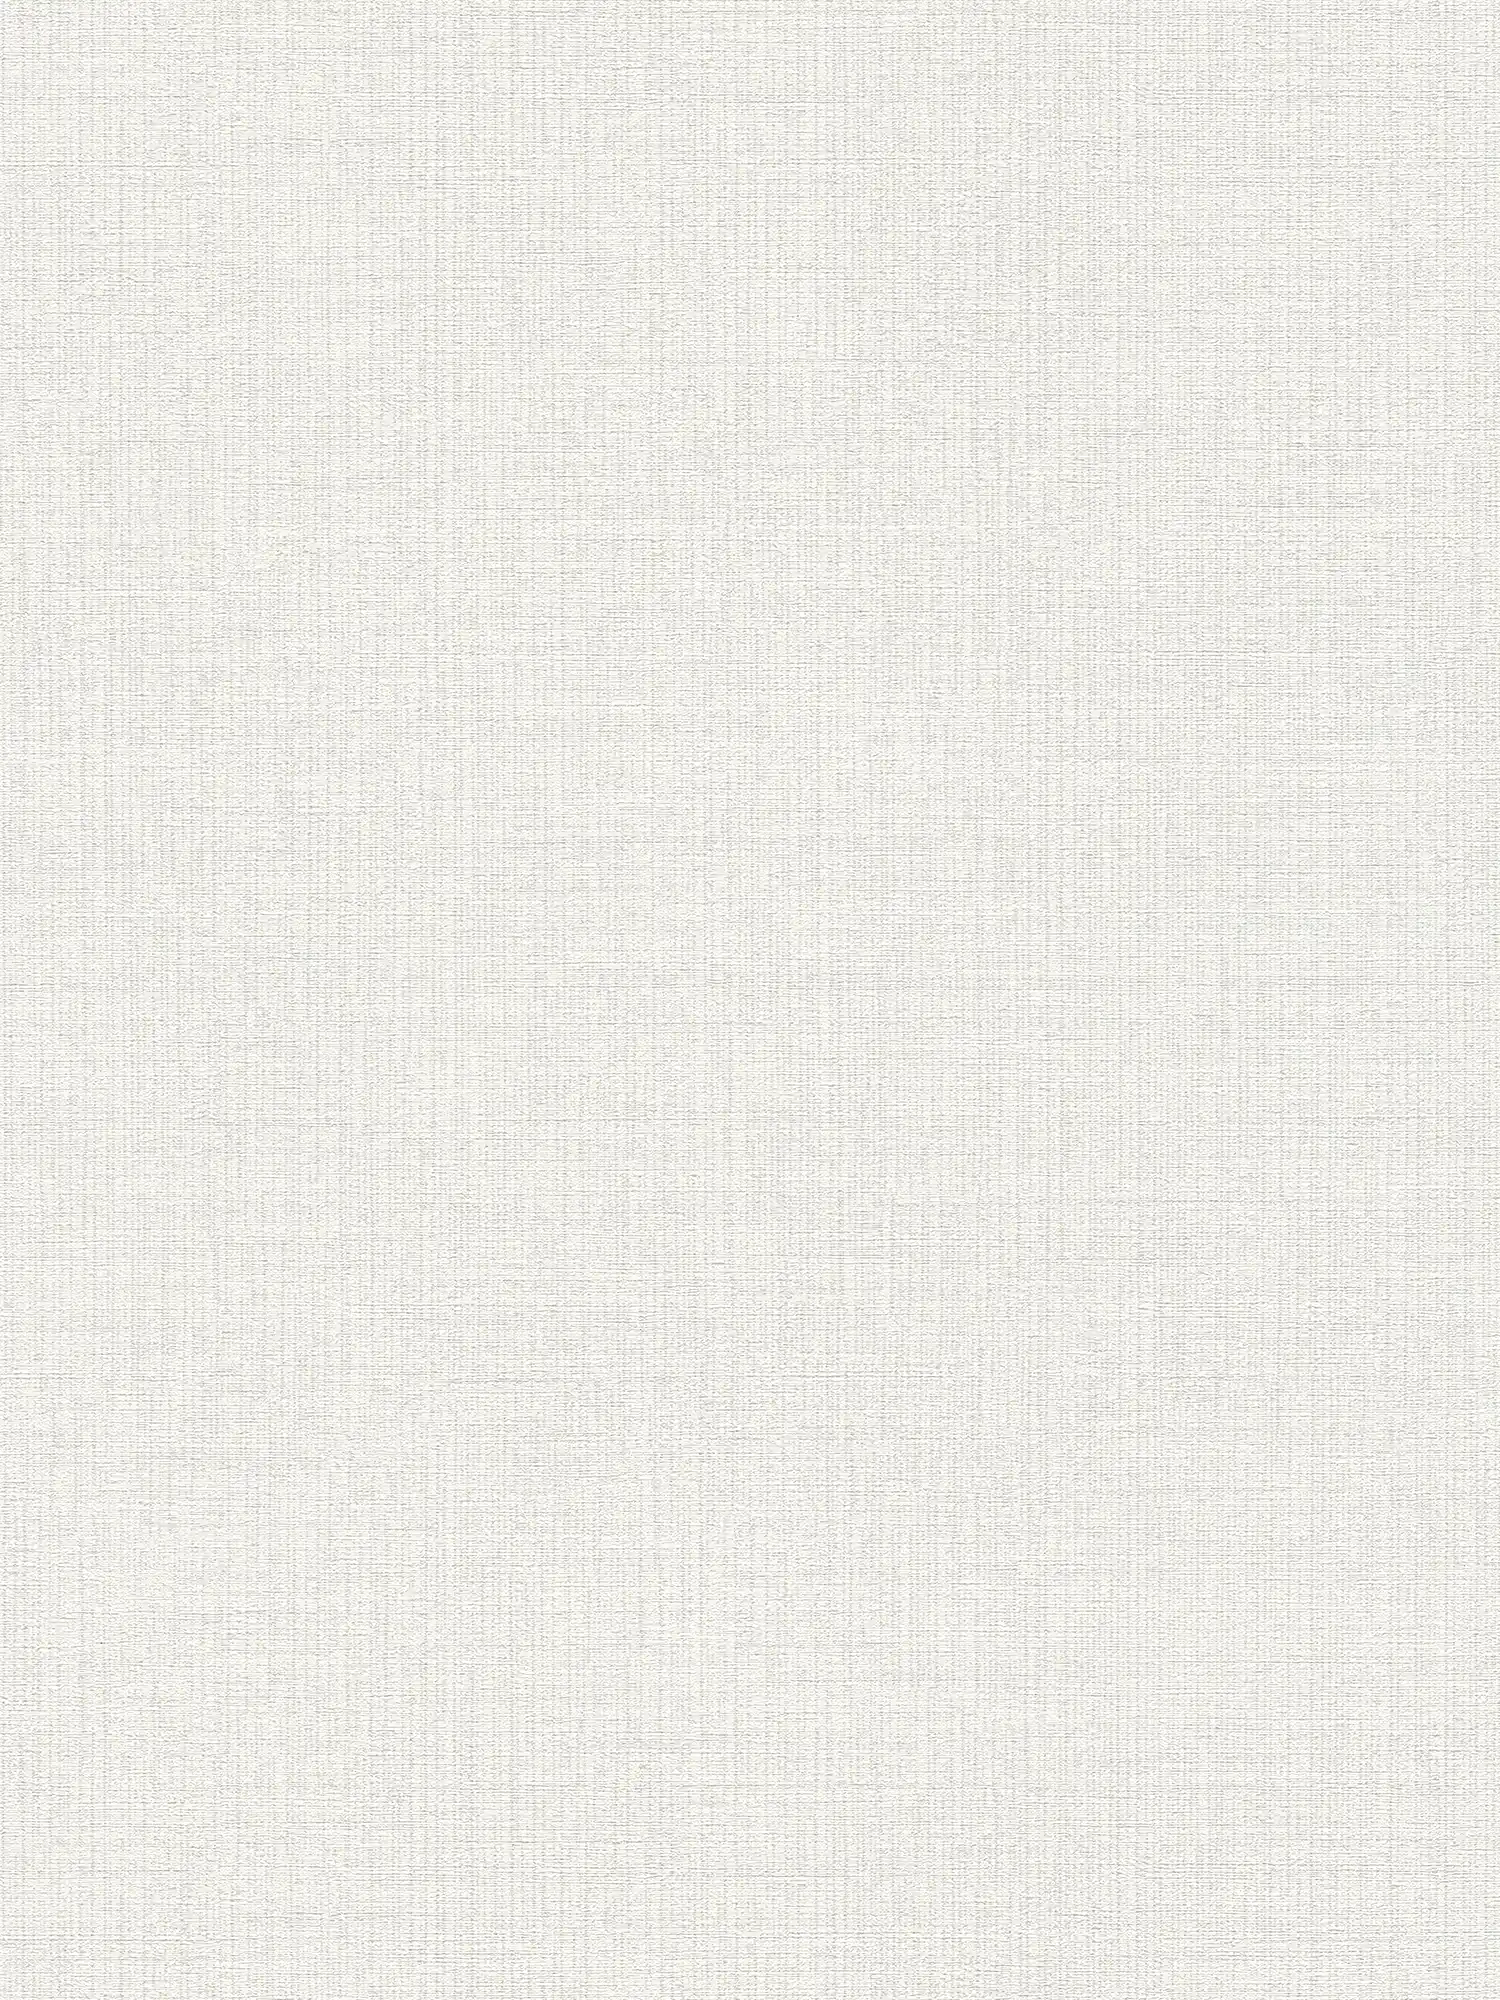 White wallpaper non-woven with canvas texture - white, metallic
